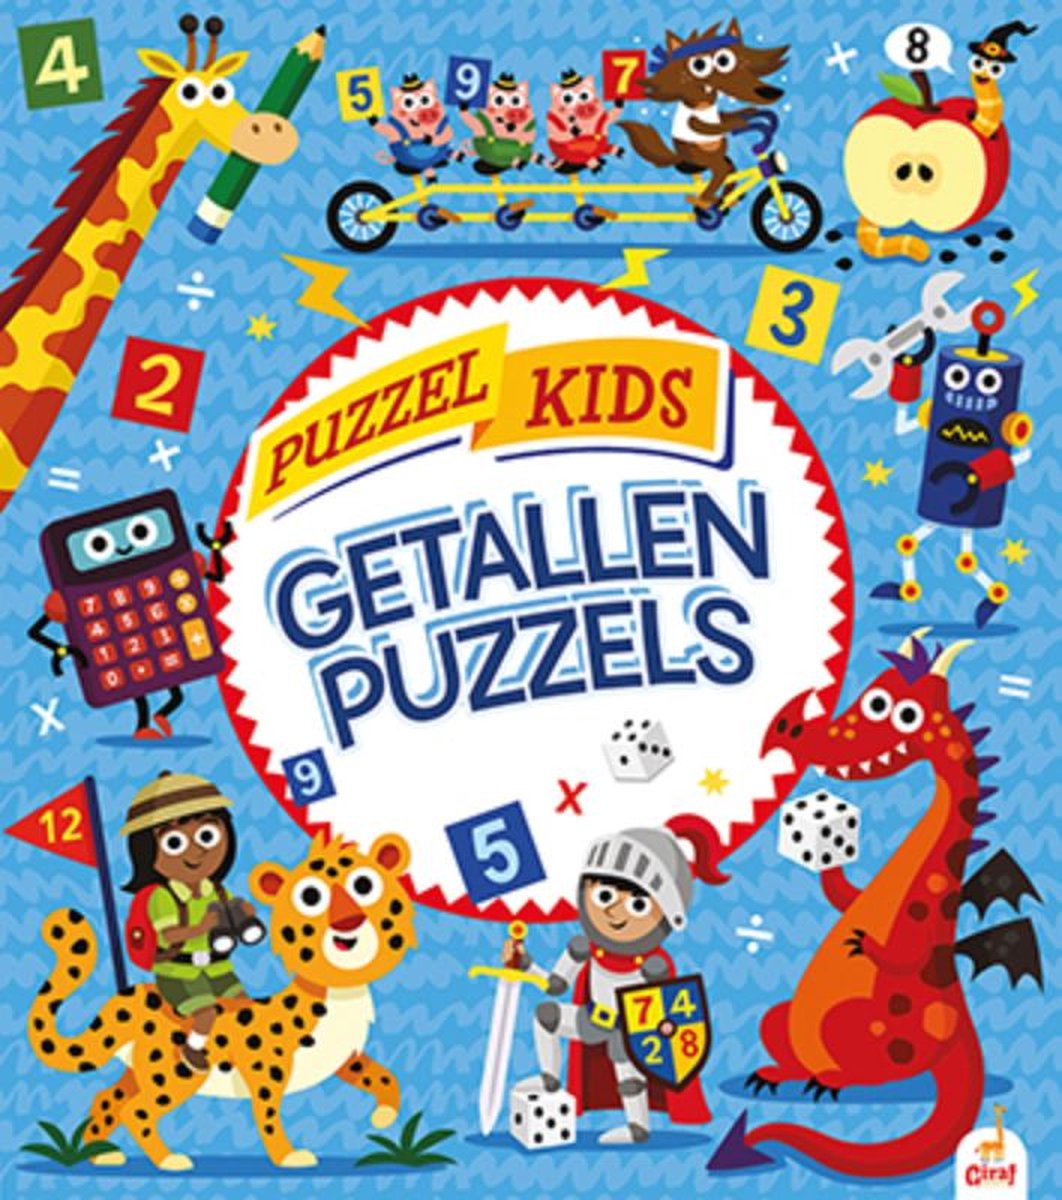 Puzzelkids - Getallenpuzzels